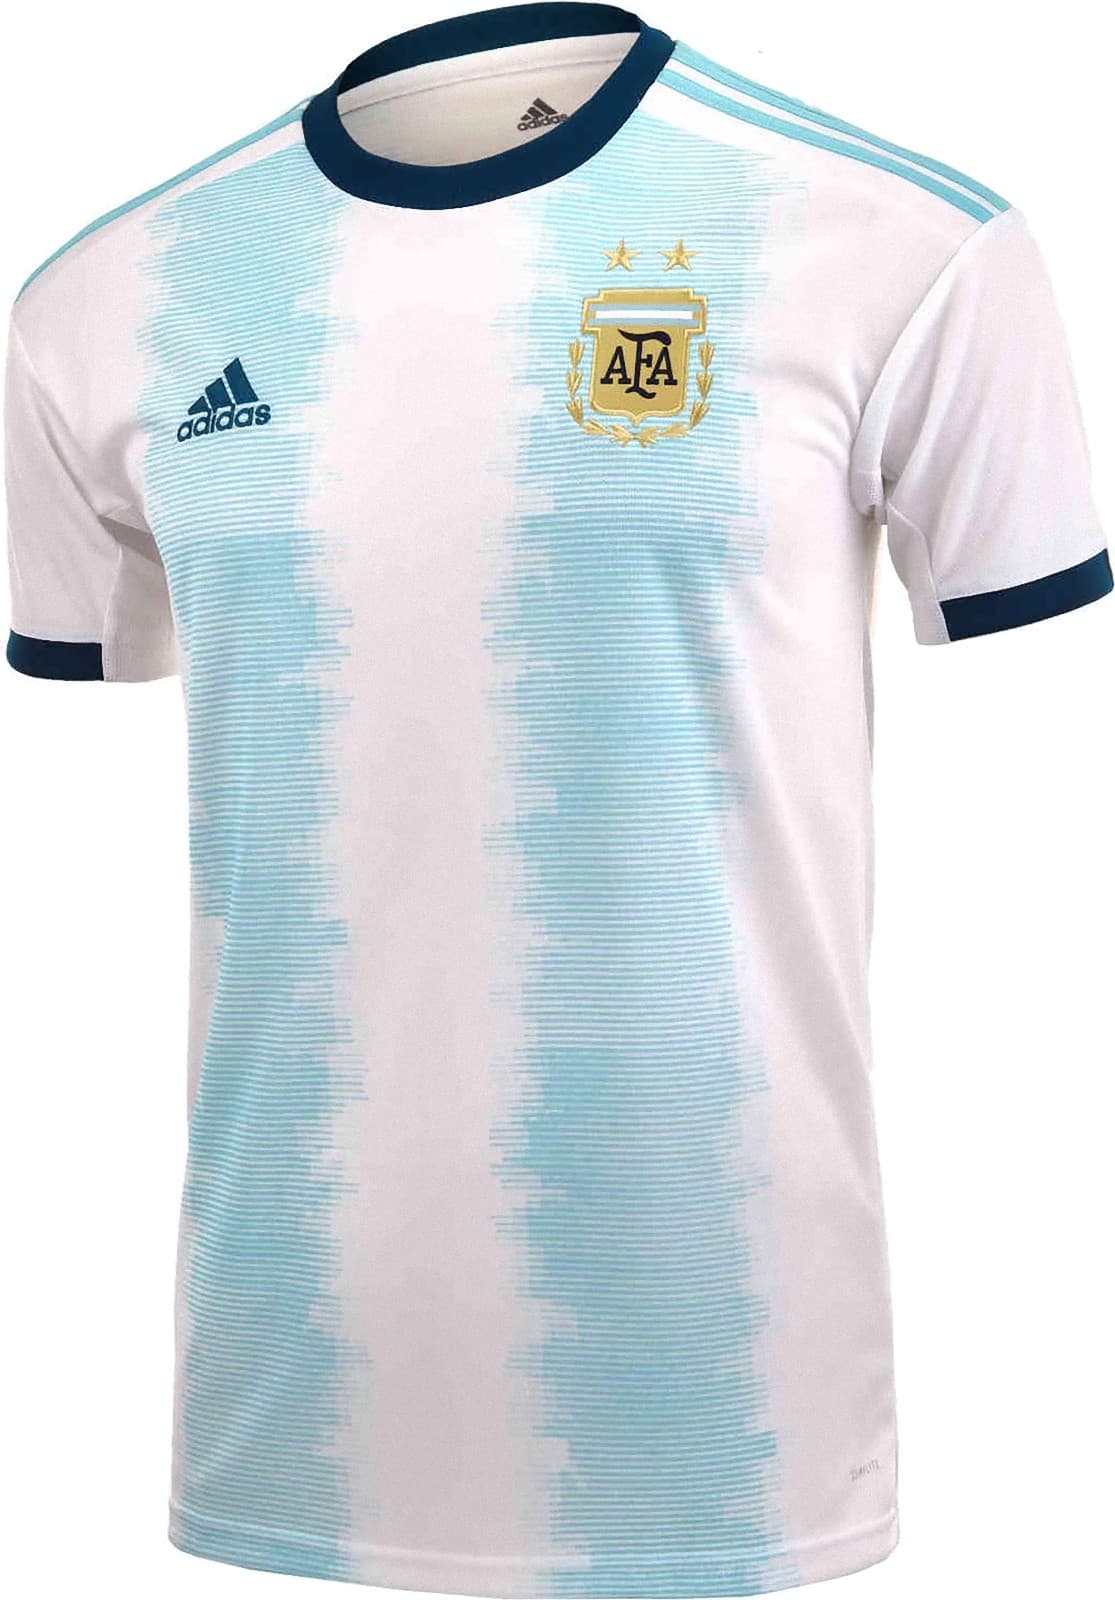 アルゼンチン代表 19 コパ アメリカユニフォーム ユニ11